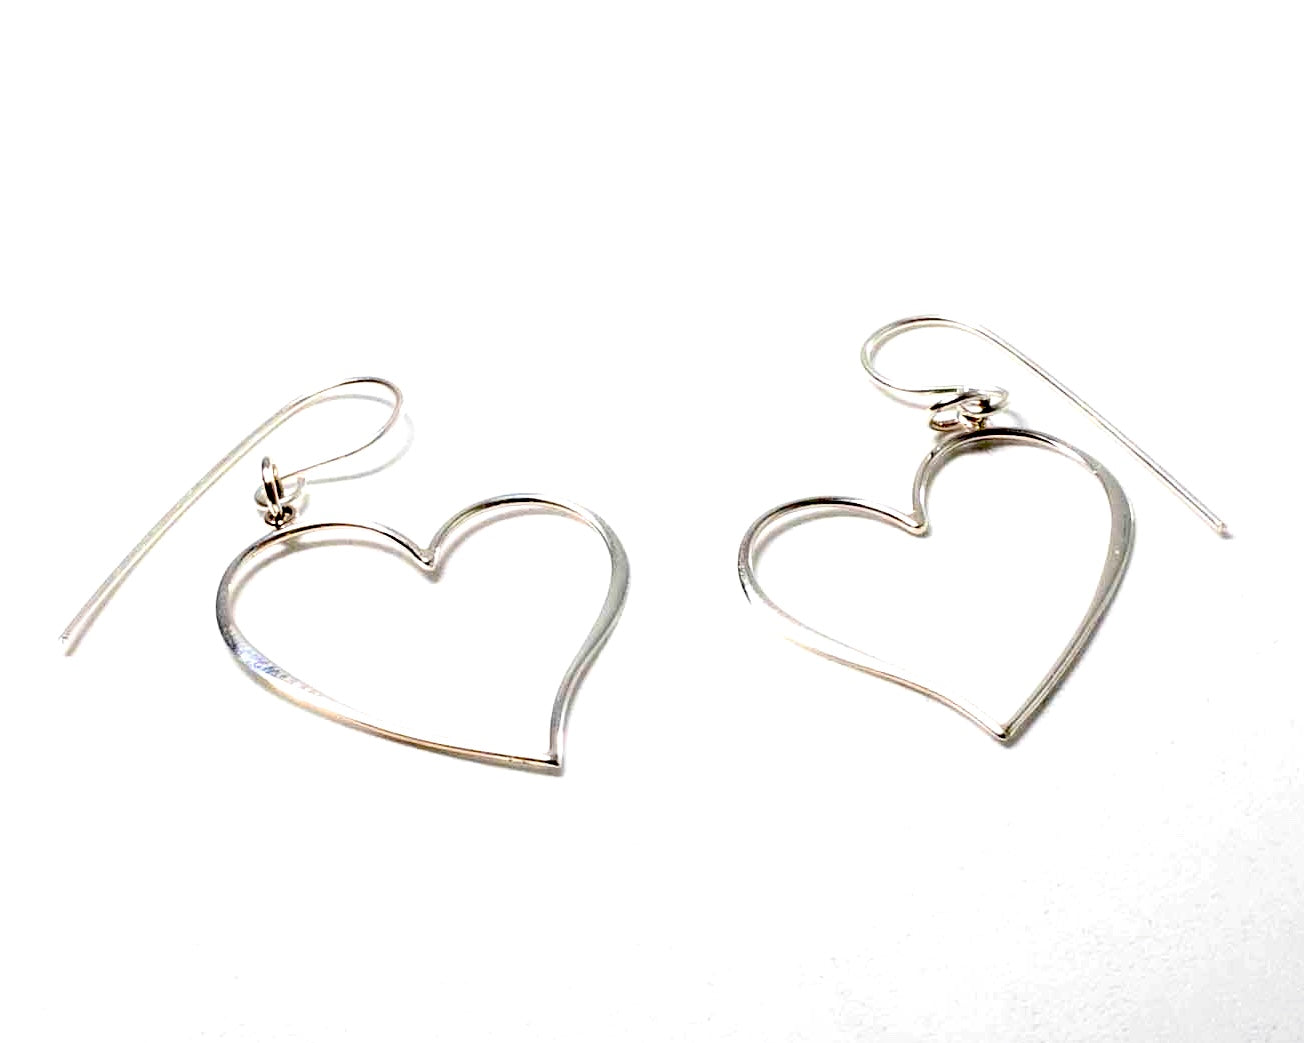 25 mm Sterling Silver Heart shaped earrings on a sheppard hook